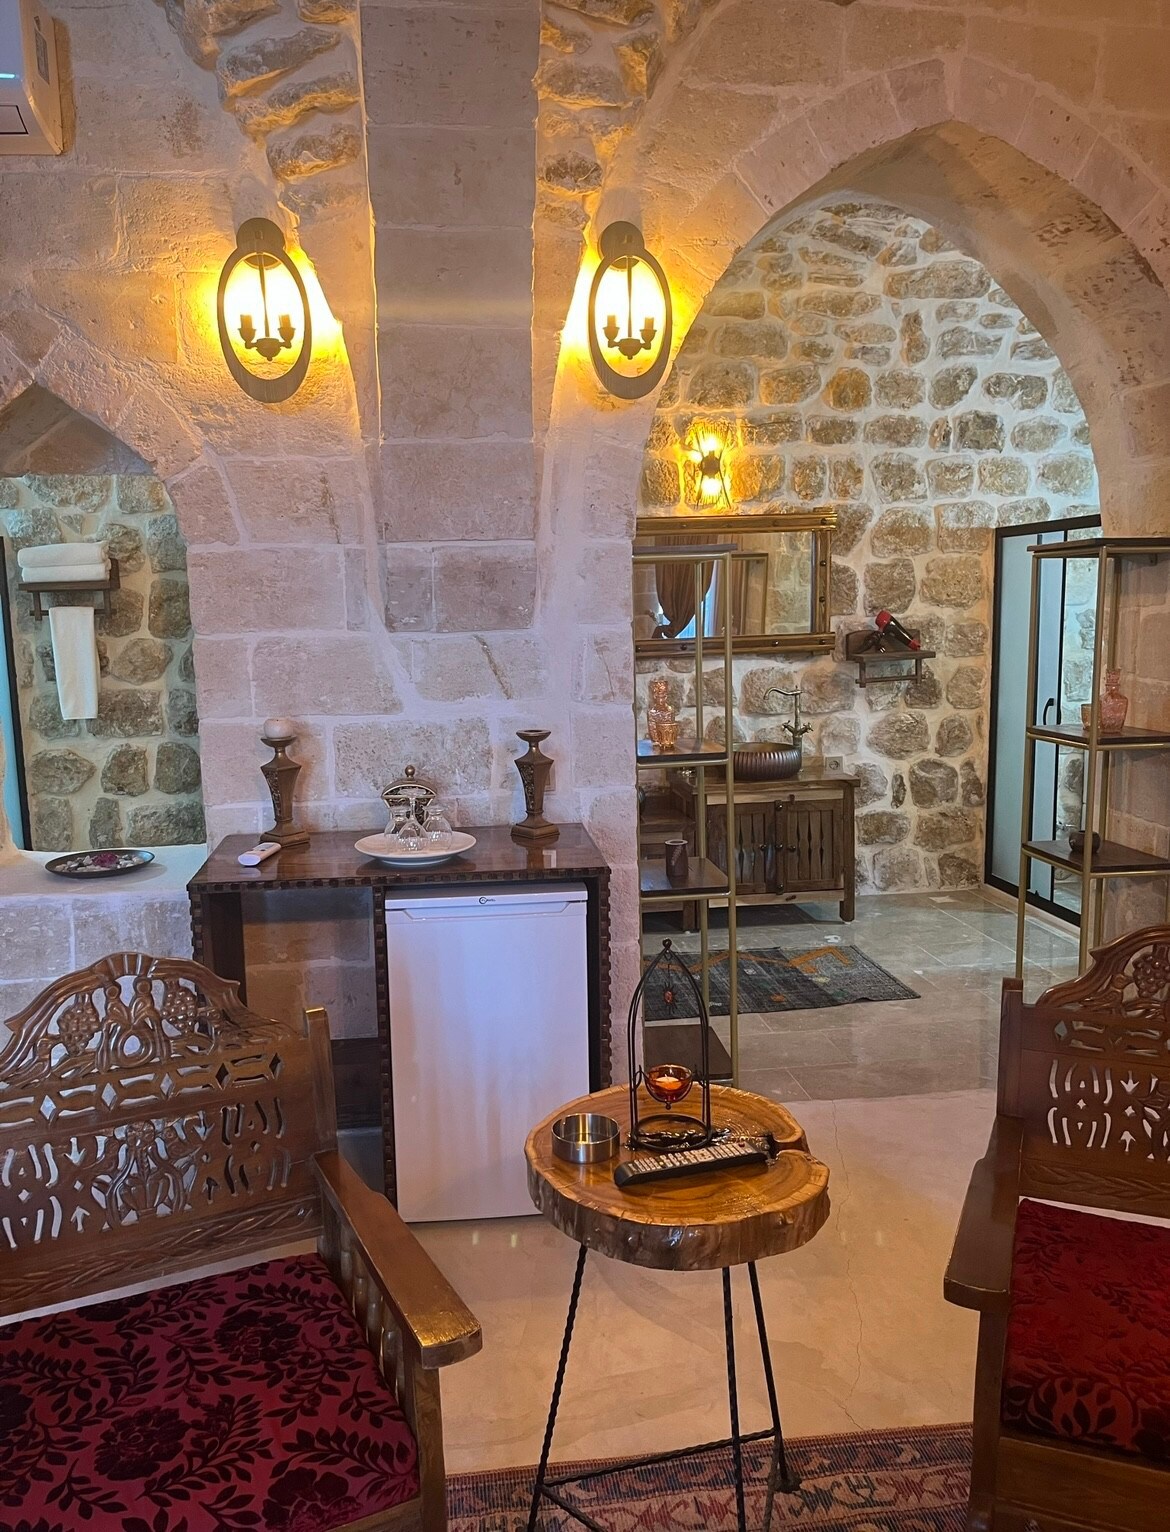 tarihi ve mistik bir anı
Hotel @Mardin